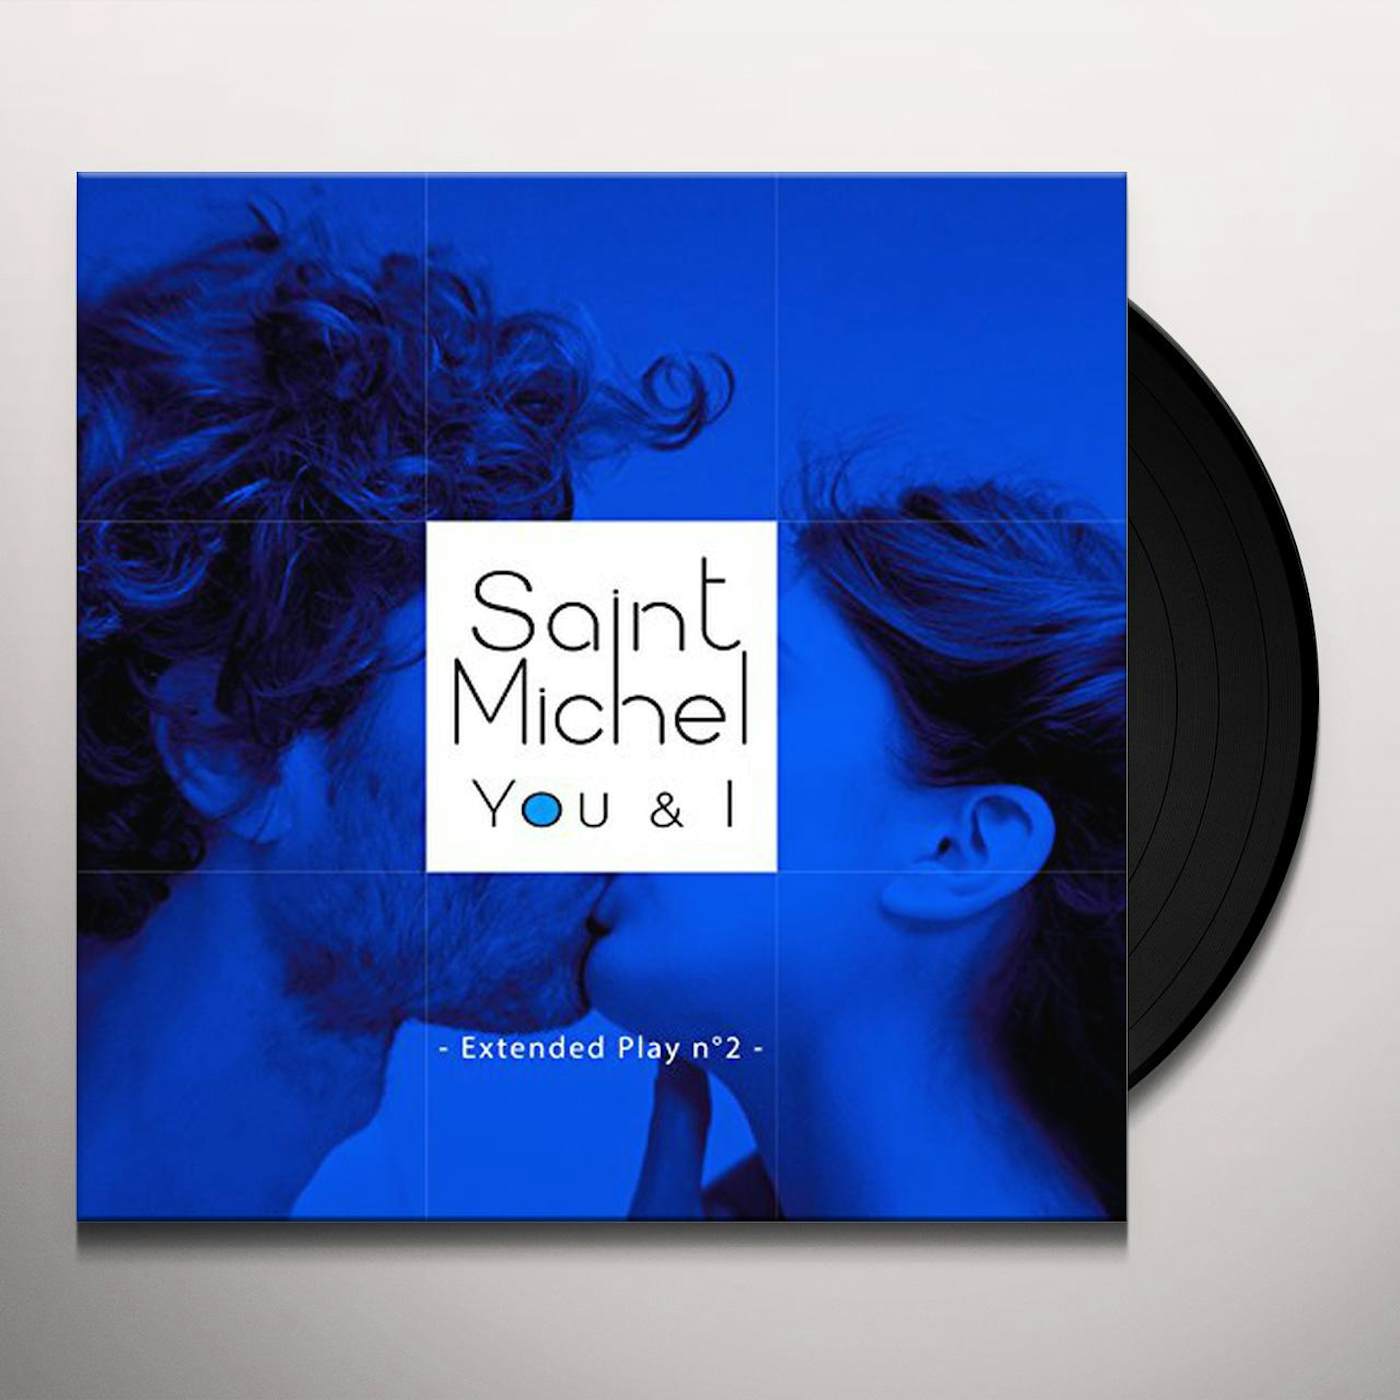 Saint Michel You & I Vinyl Record